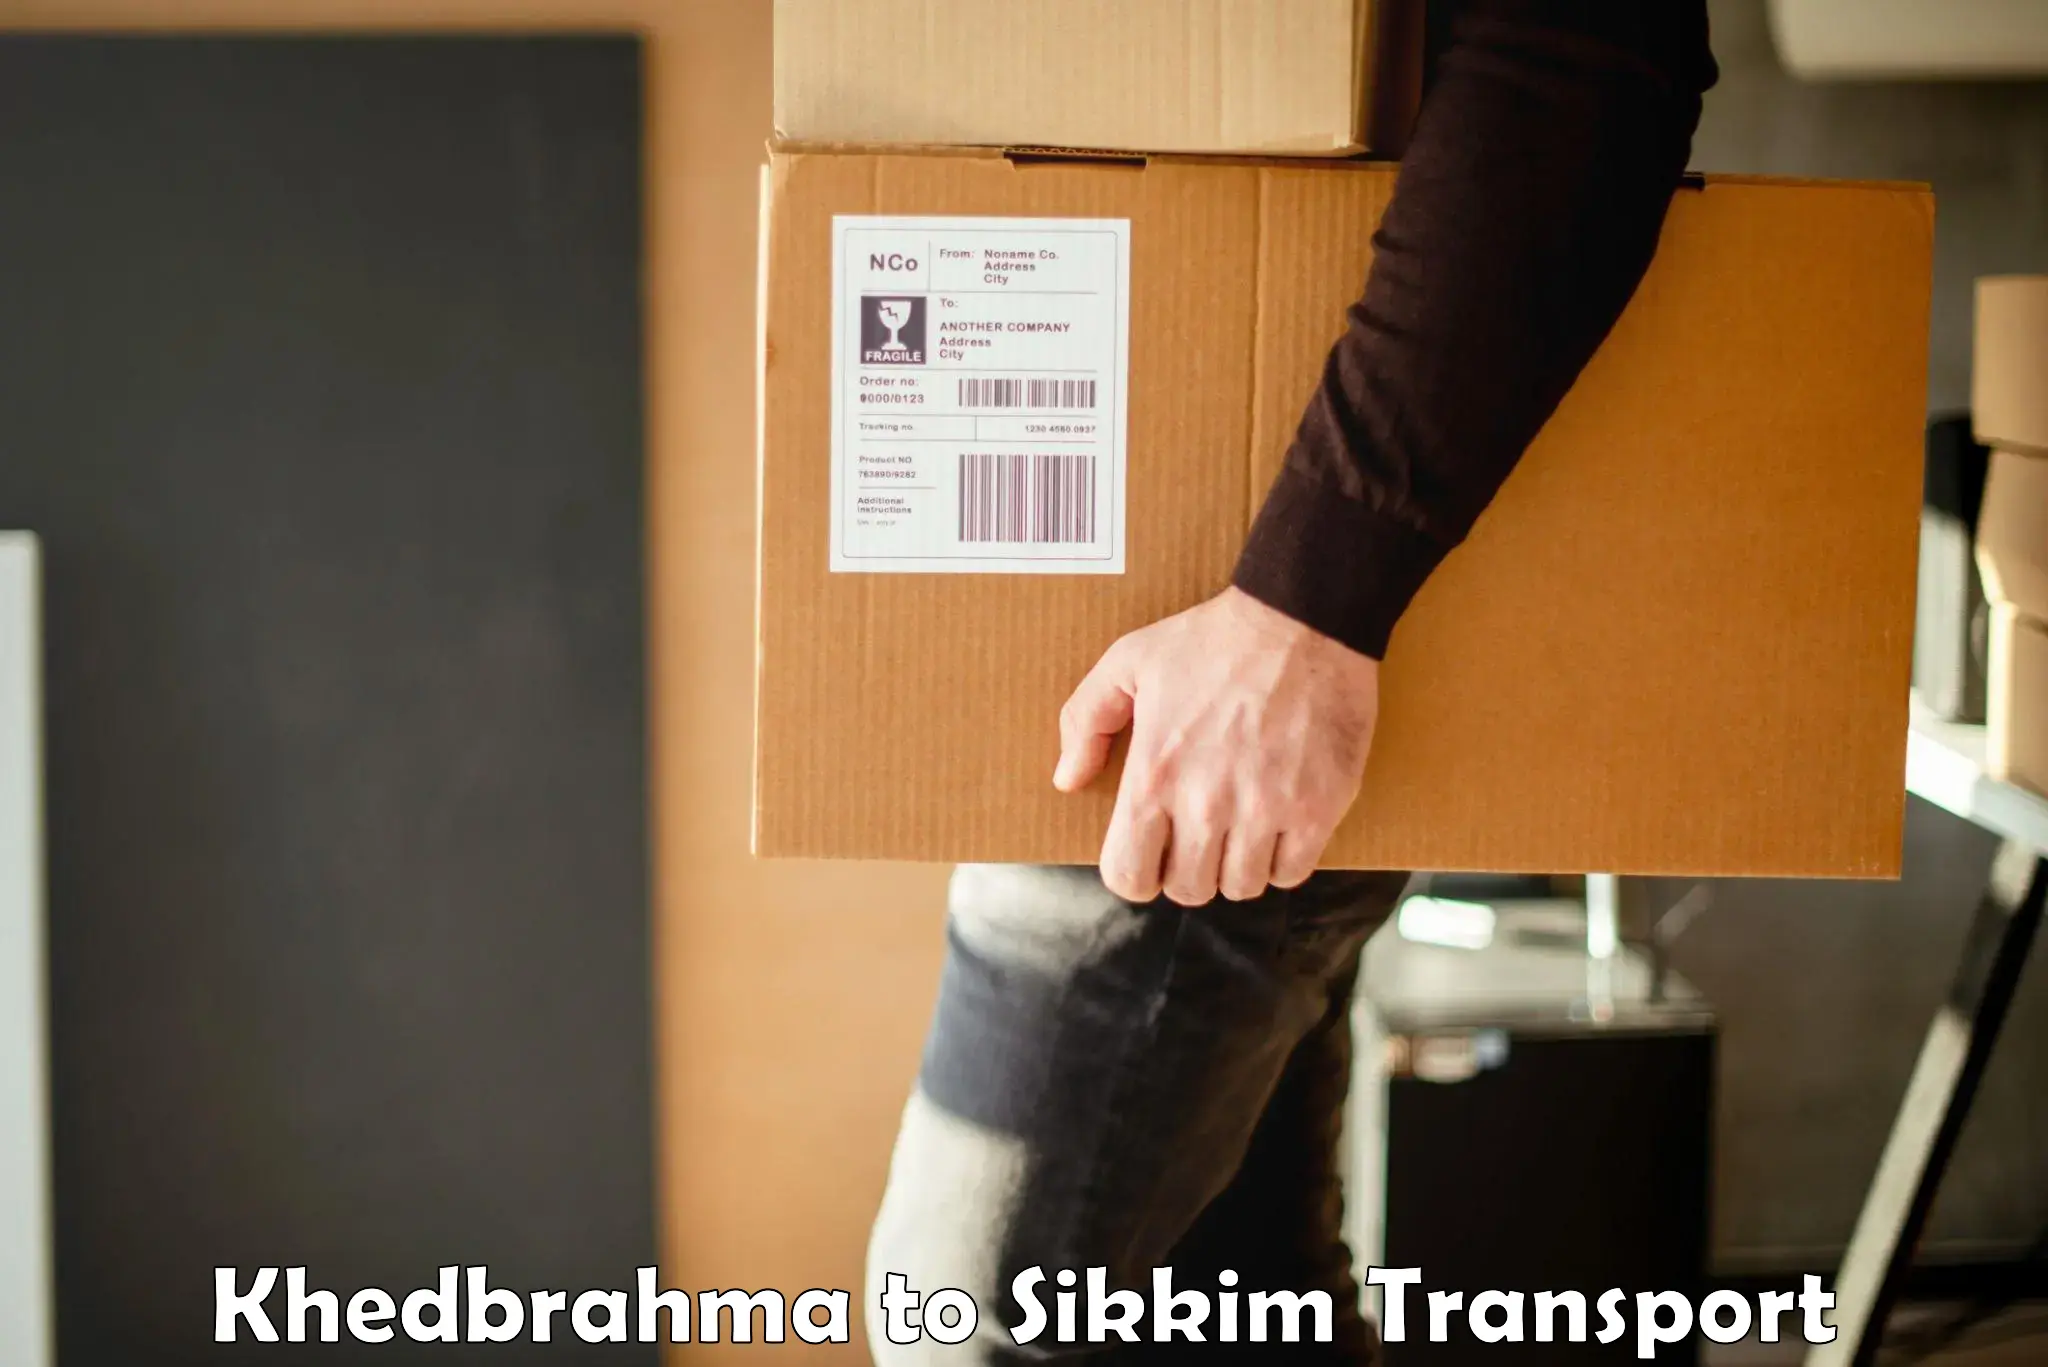 Furniture transport service Khedbrahma to Jorethang